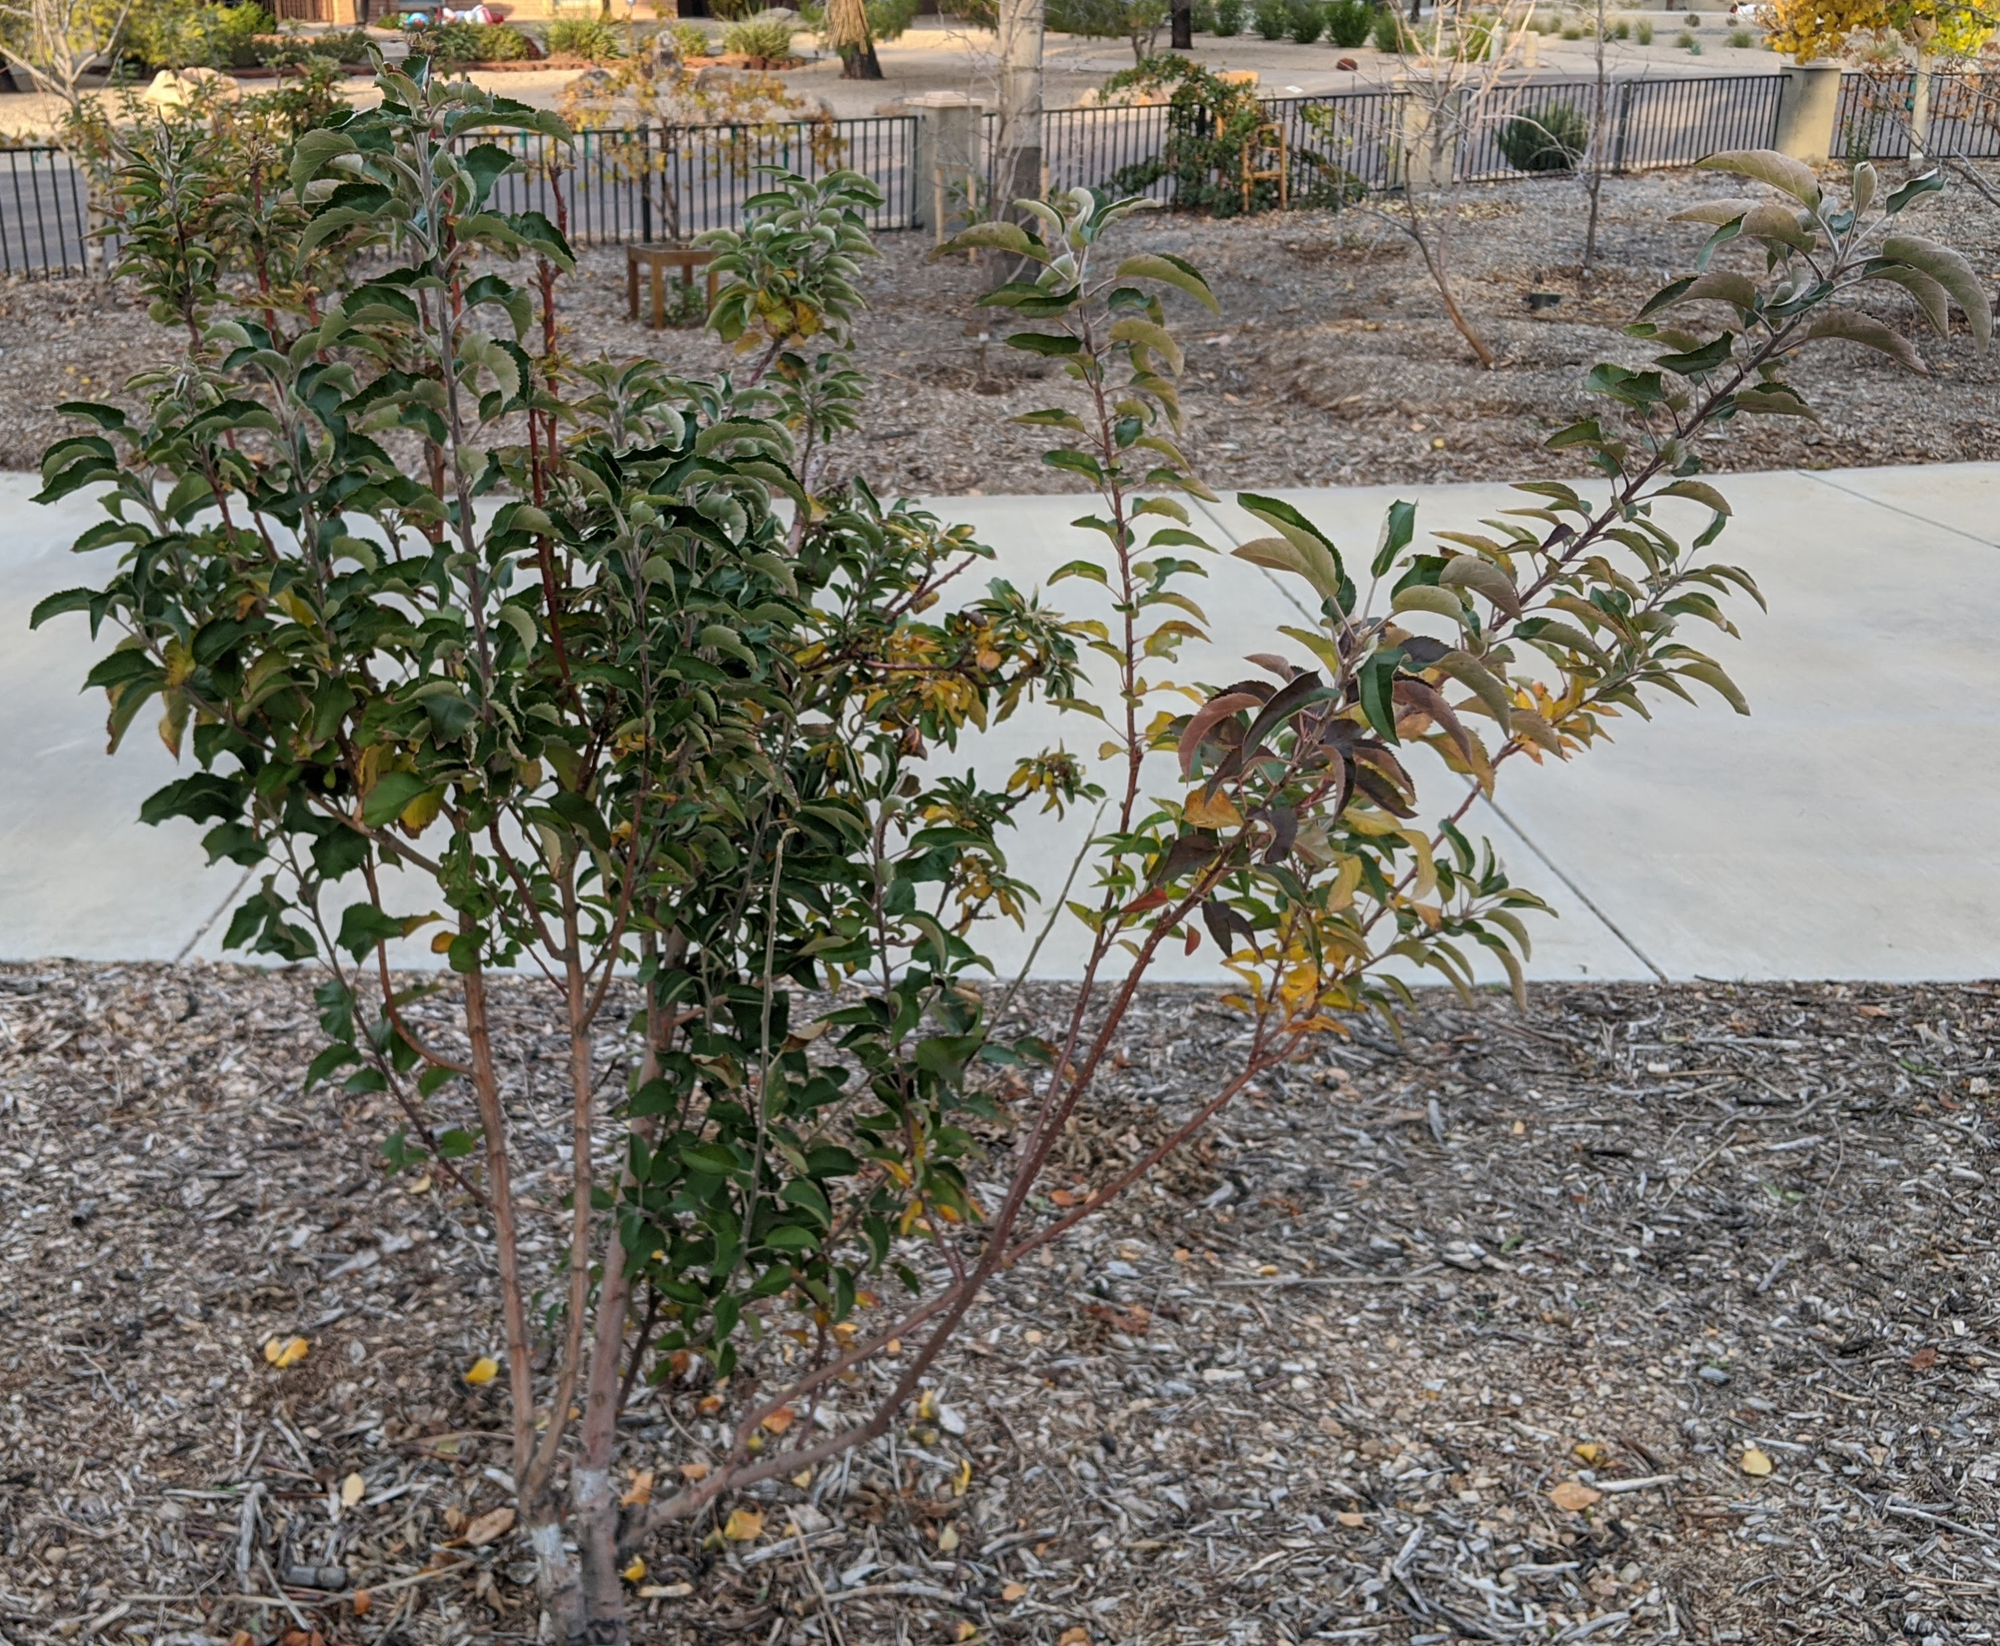 A plant, tree, bush, shrub or vine